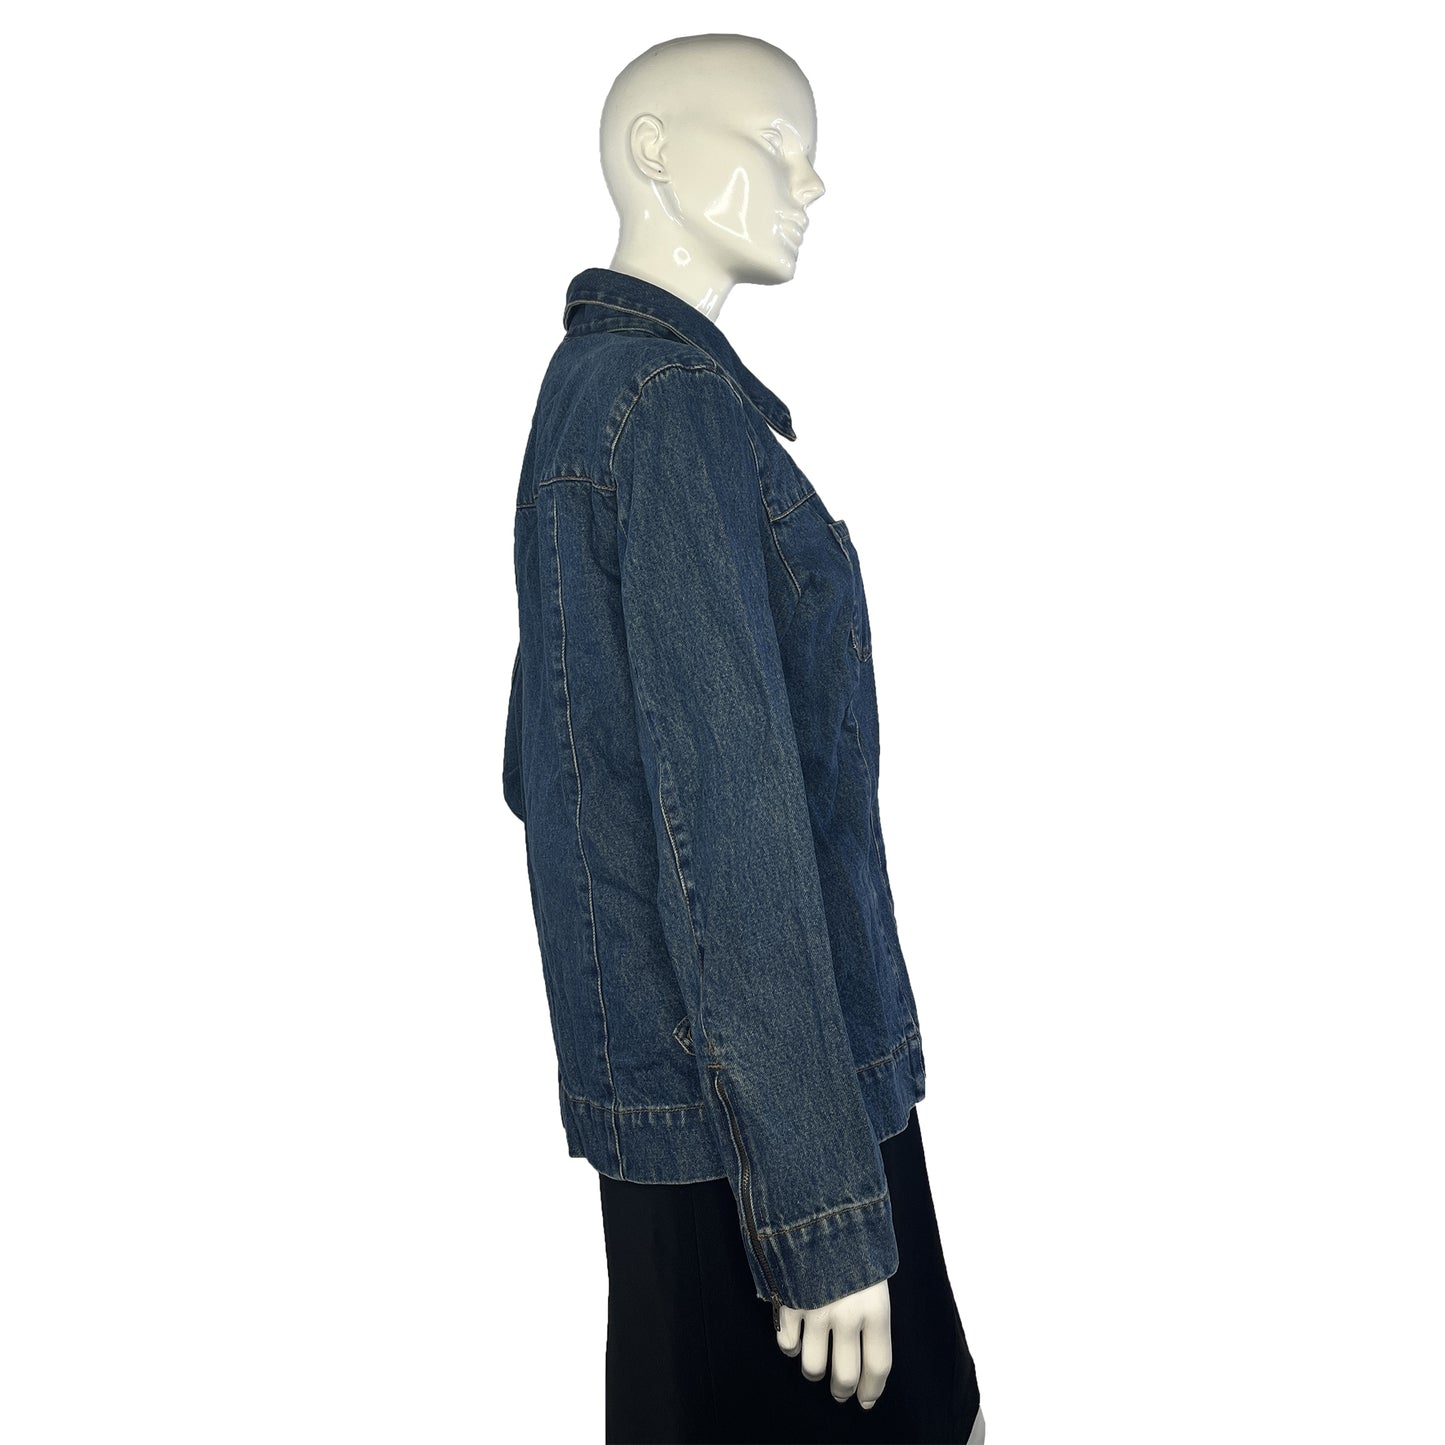 Denim & Co. Denim Jacket Zip-Up Dark Blue Size M SKU 000425-4